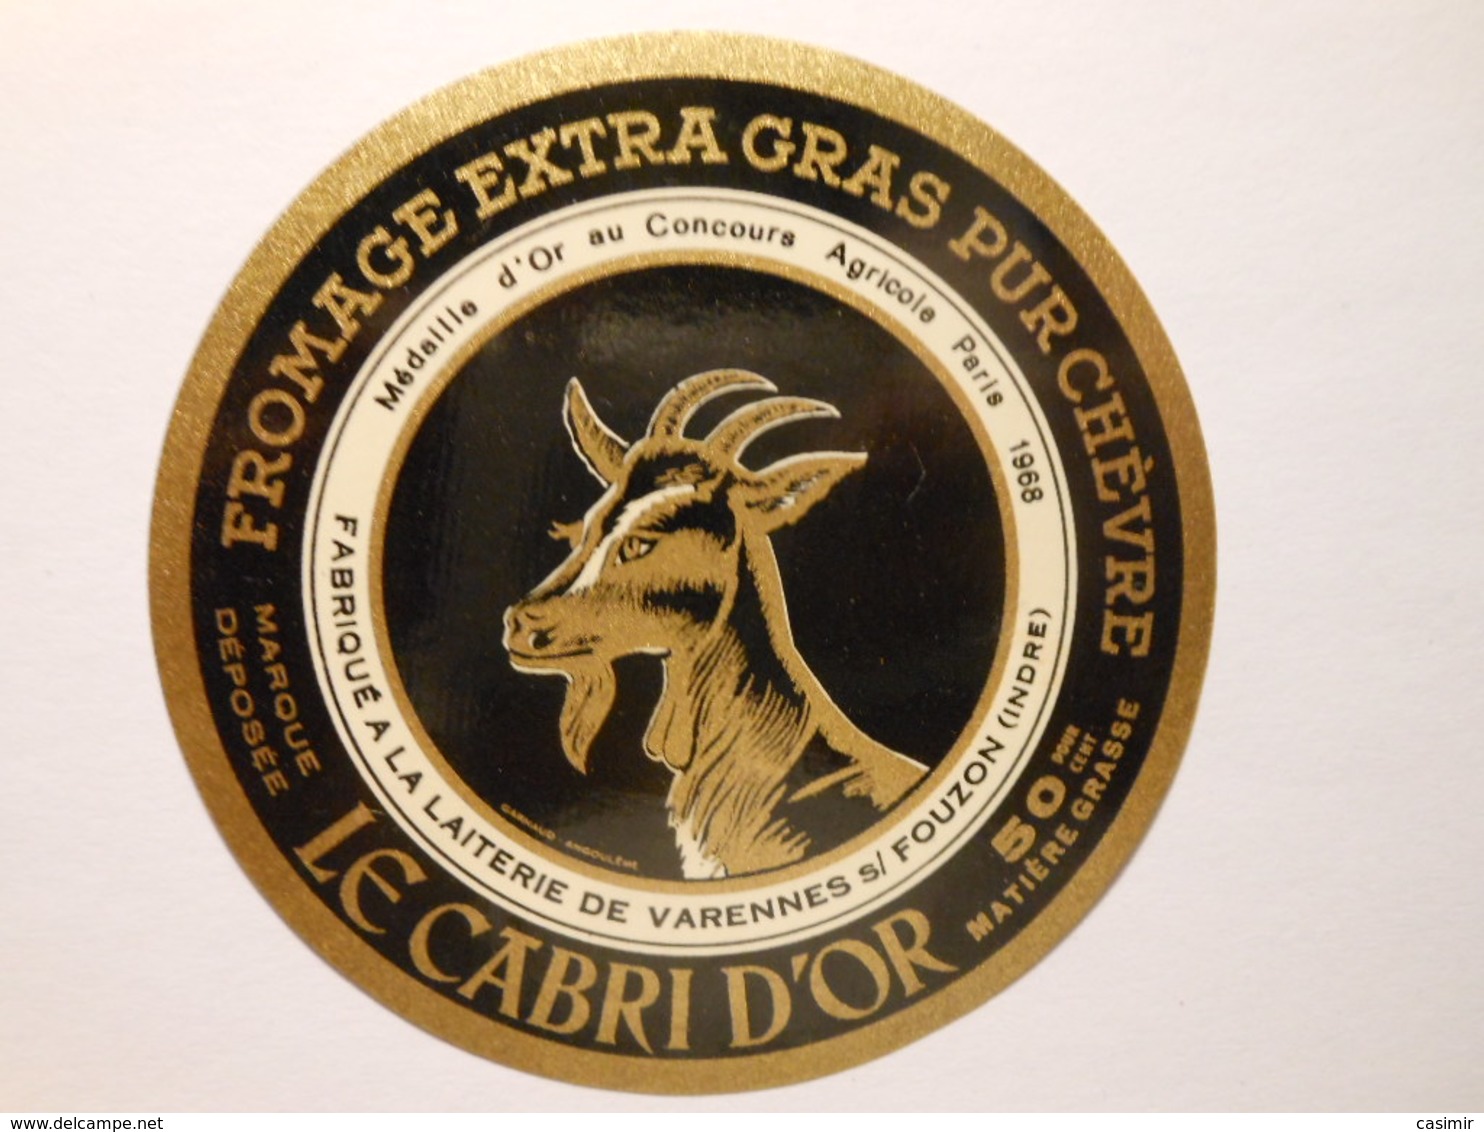 A-36066b - Etiquette De Fromage De Chèvre LE CABRI D'OR - Médaille 1968 - PARIGNY à VARENNES SUR FOUZON - Indre 36-B - Fromage